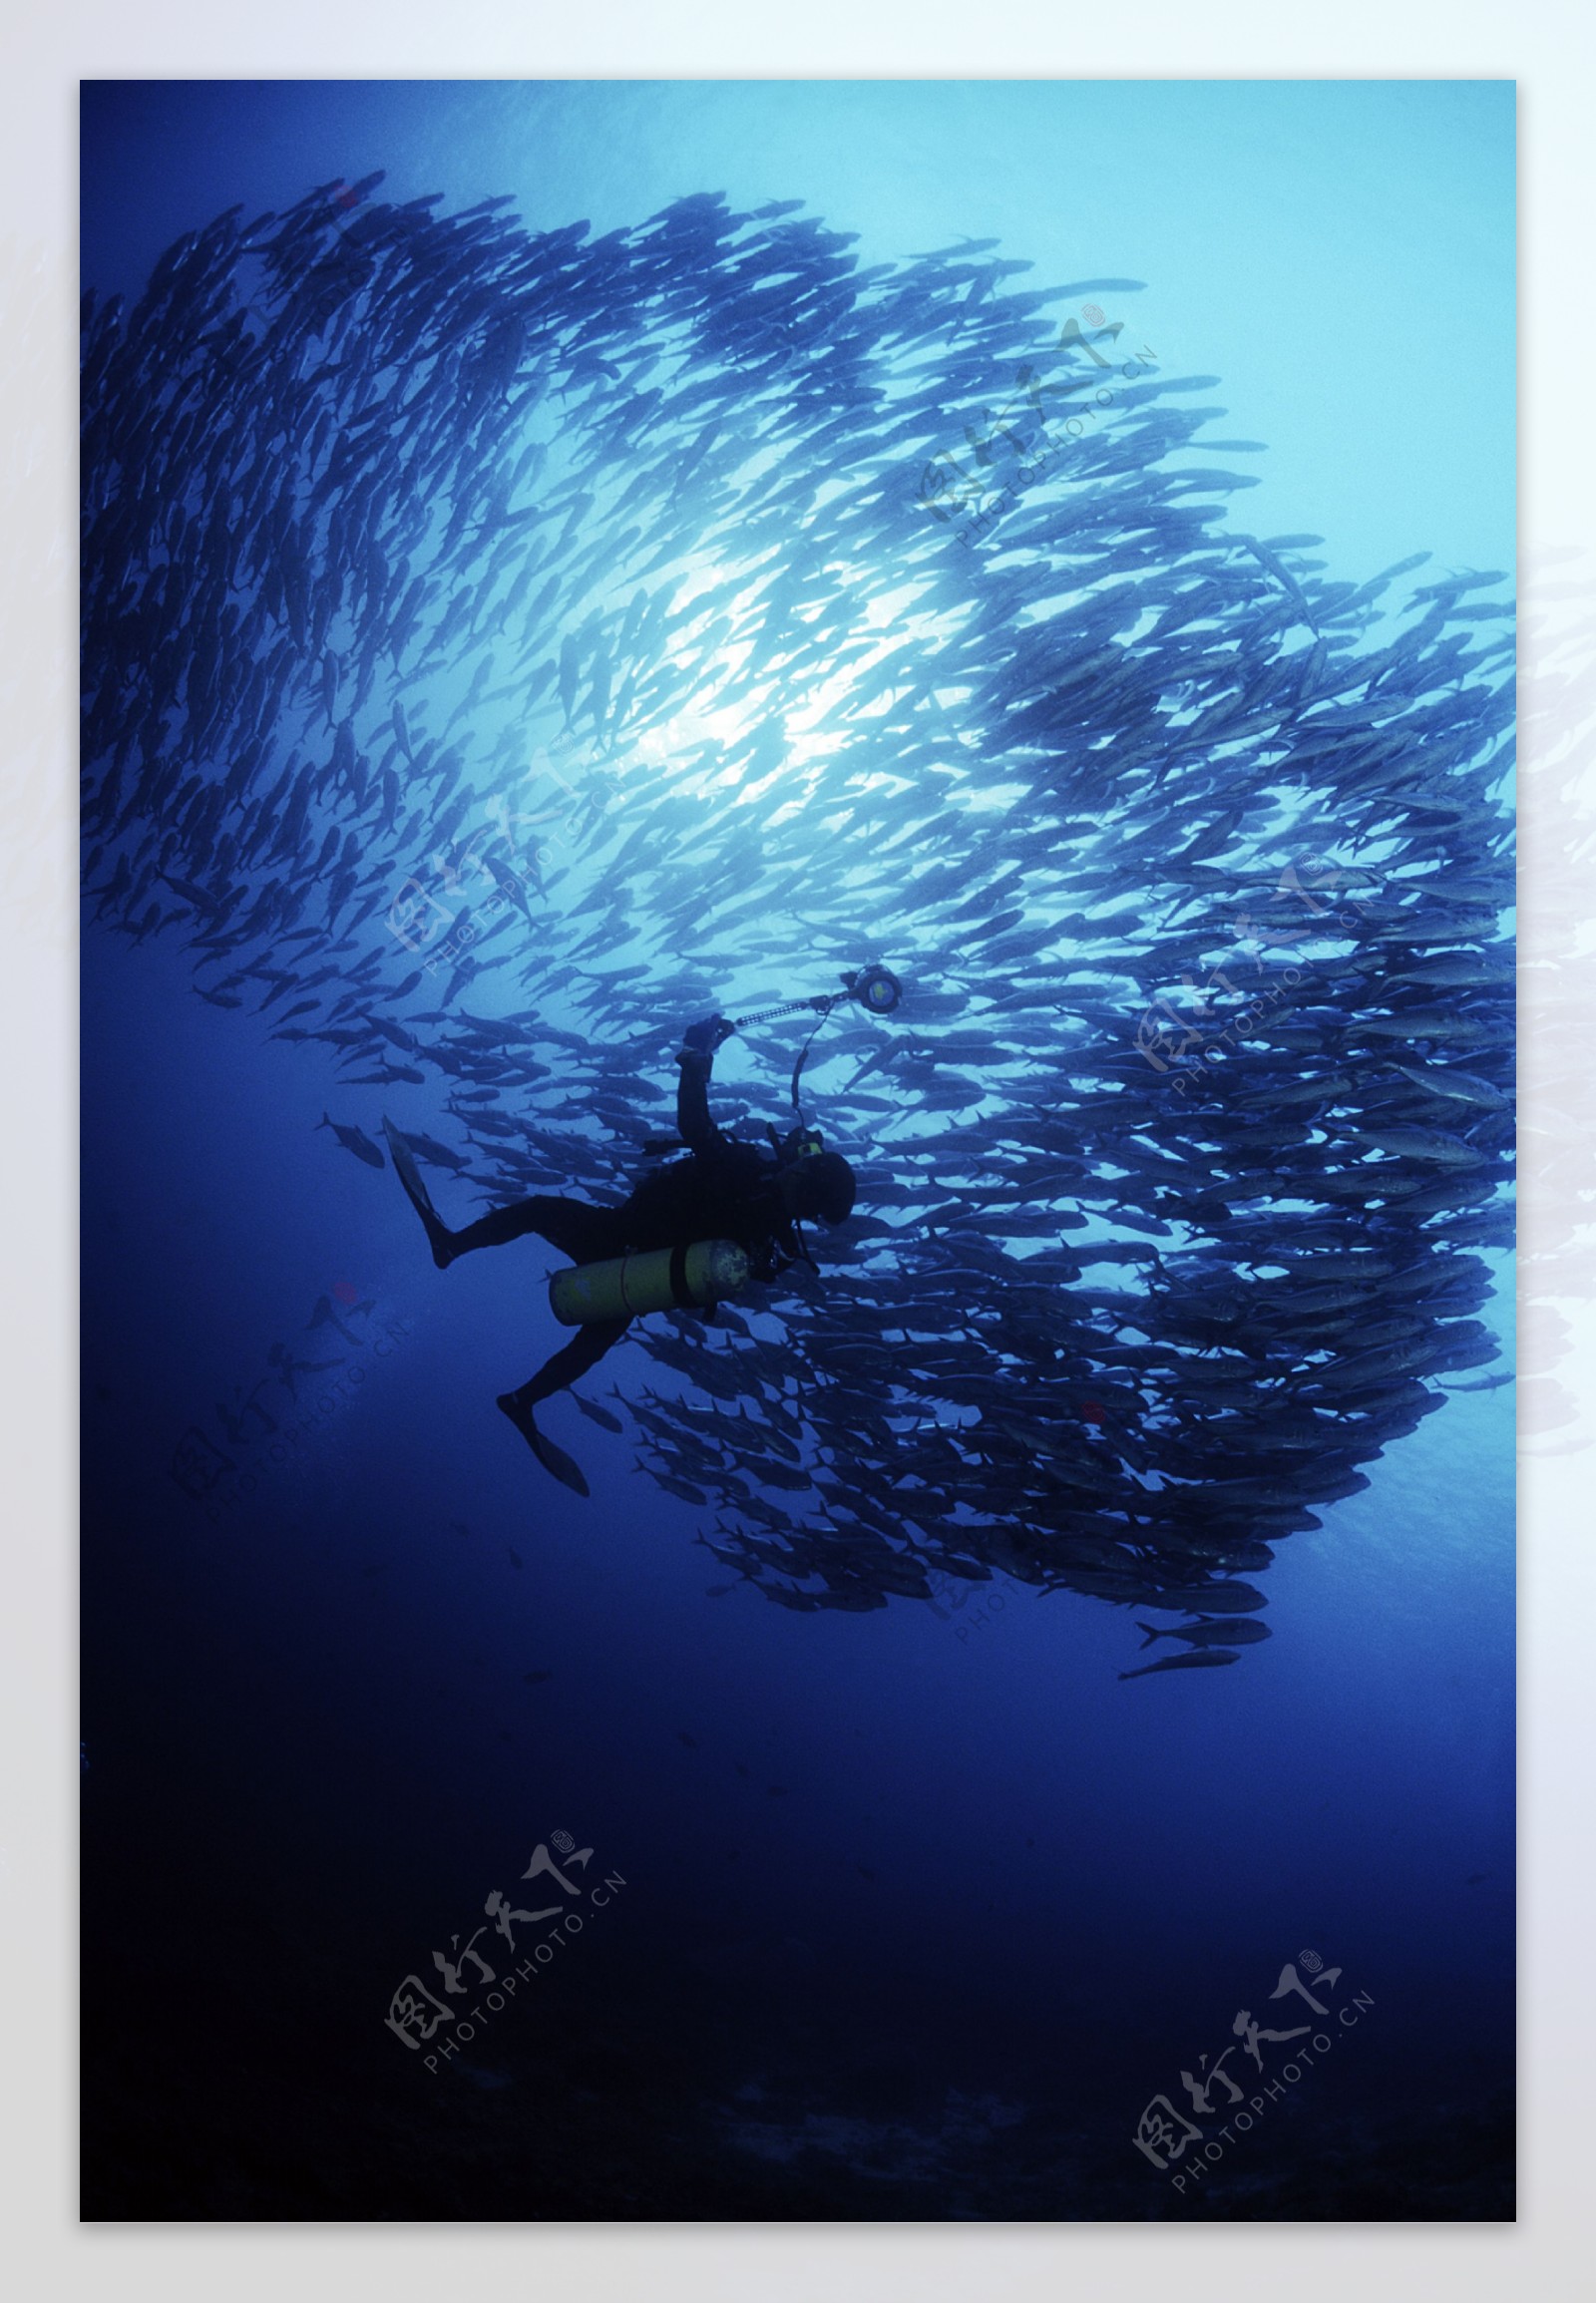 深海鱼群图片